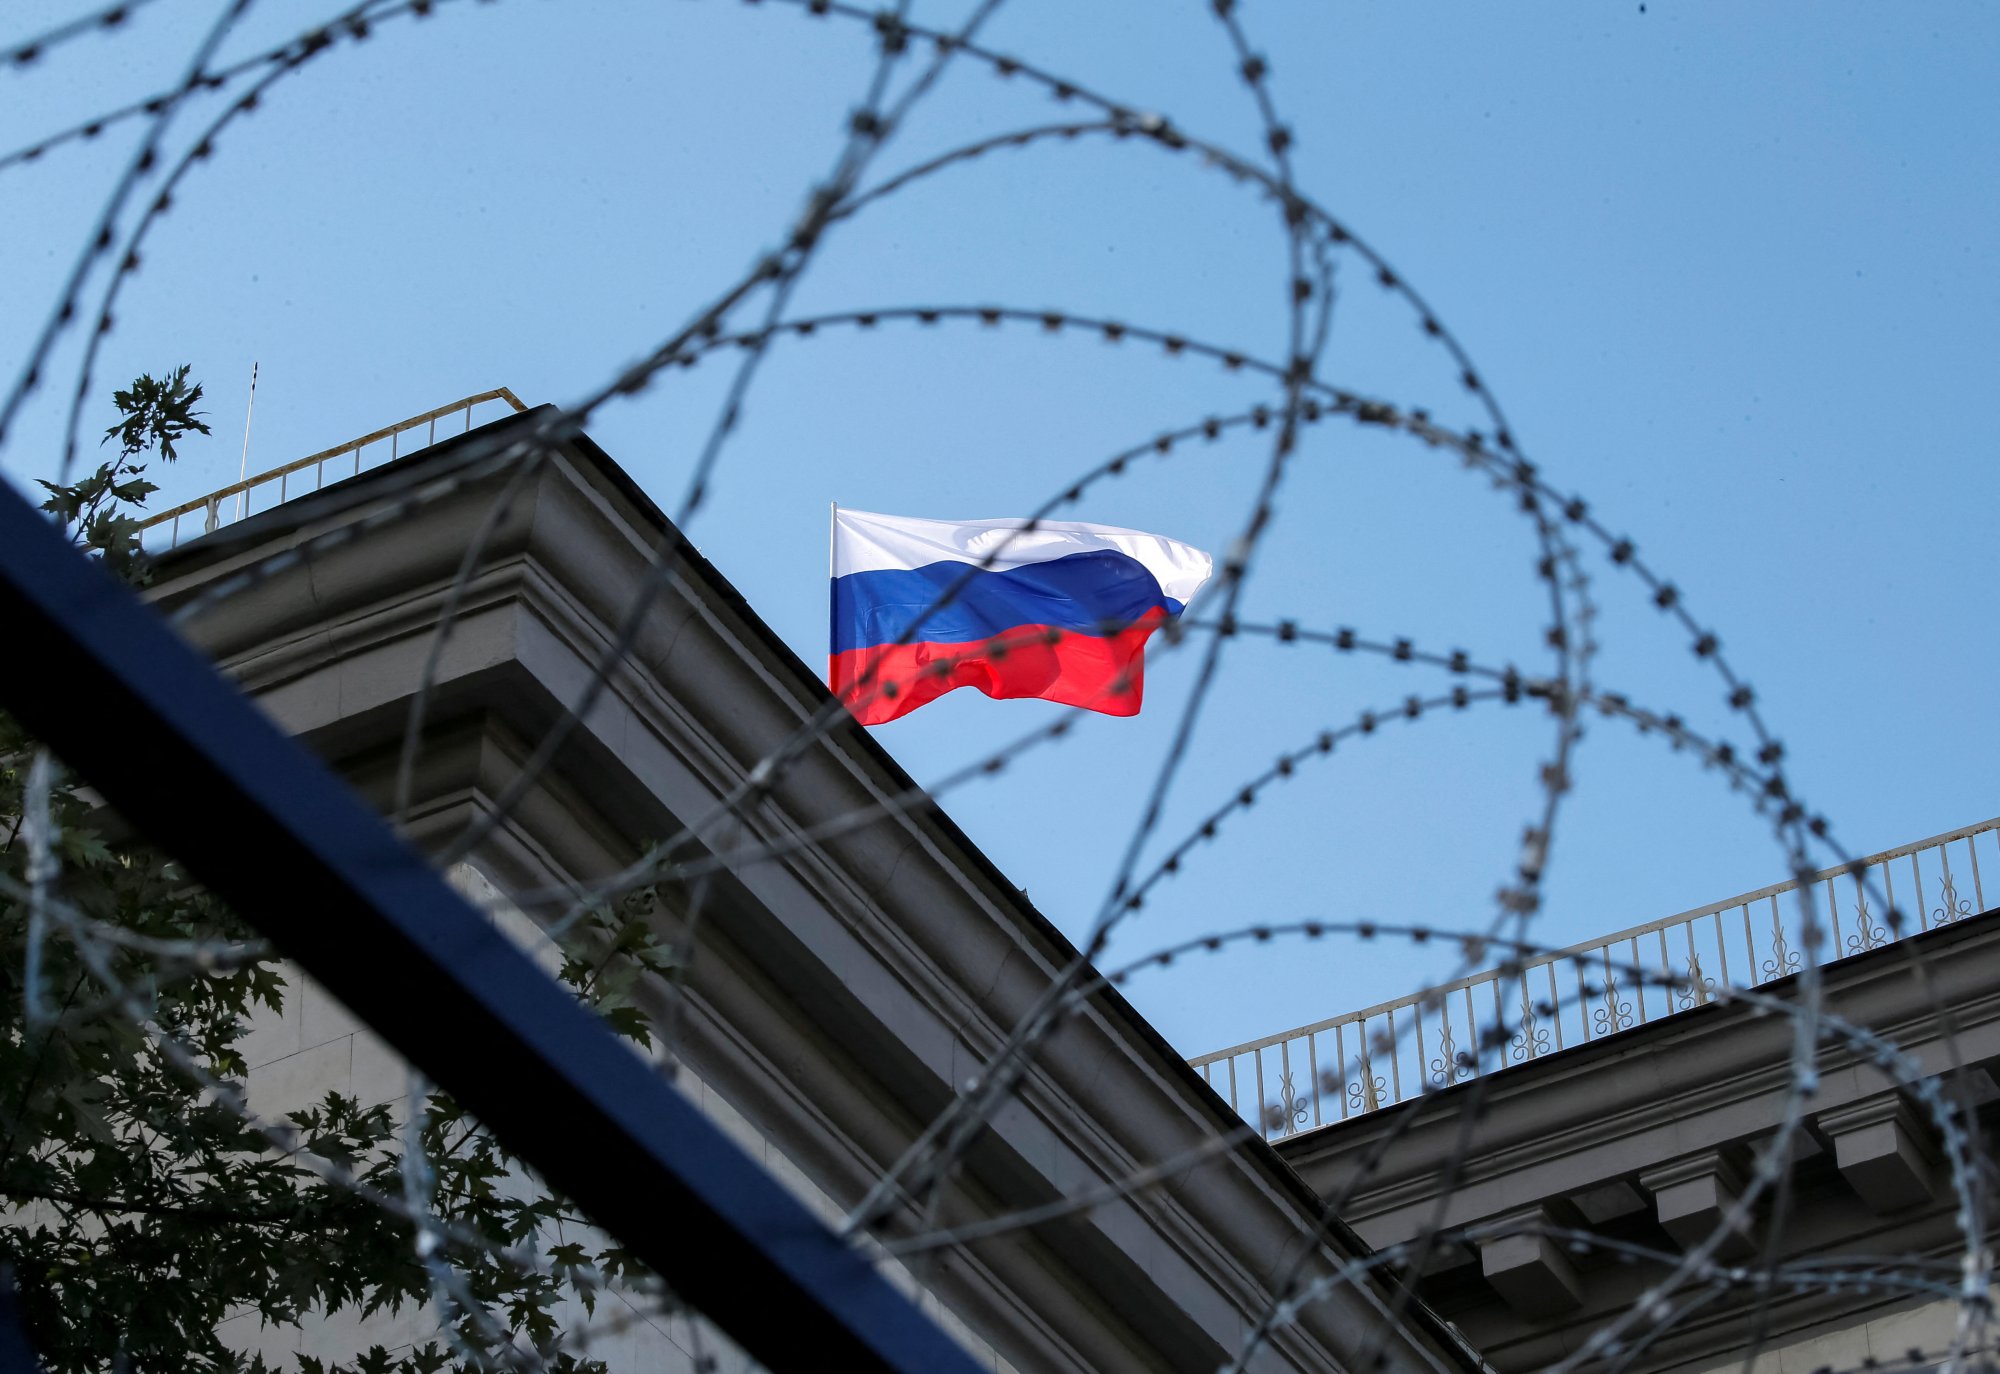 Ρωσία: Στα σκαριά deal με Δύση για τα δεσμευμένα assets – Ποιους όρους θέτει η Μόσχα